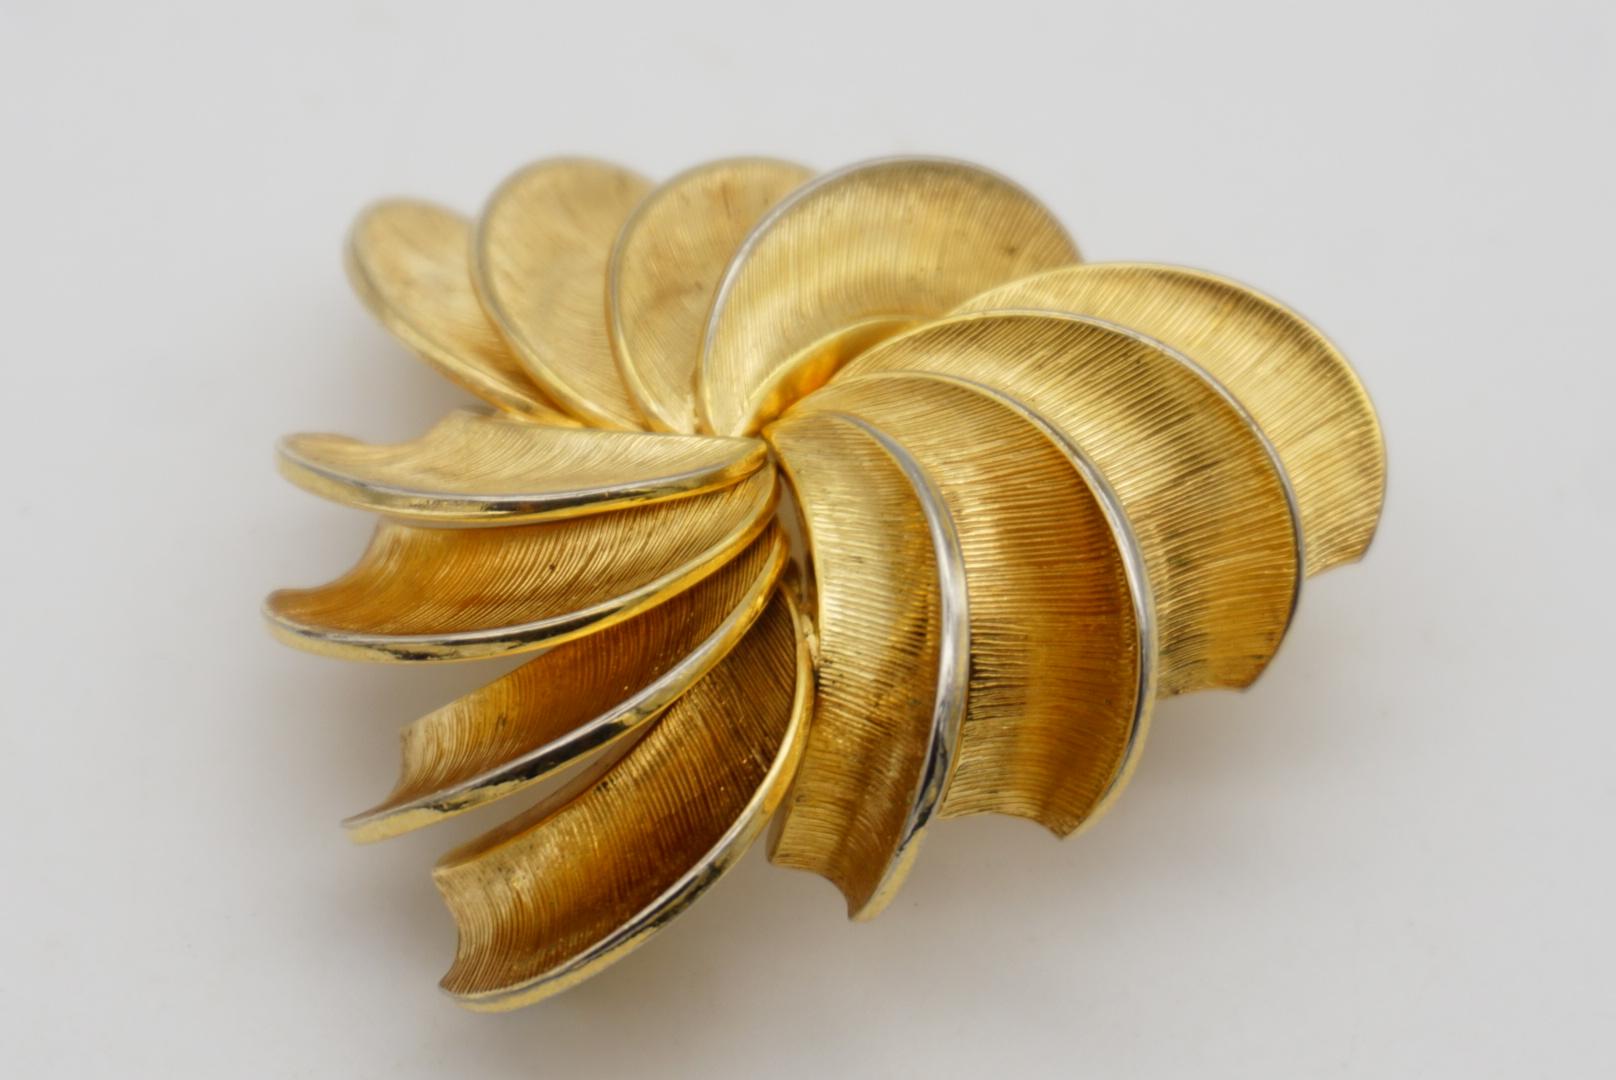 Christian Dior GROSSE 1958 Vintage Swirl Twist Fan Blade Triangle Gold Brooch  For Sale 4